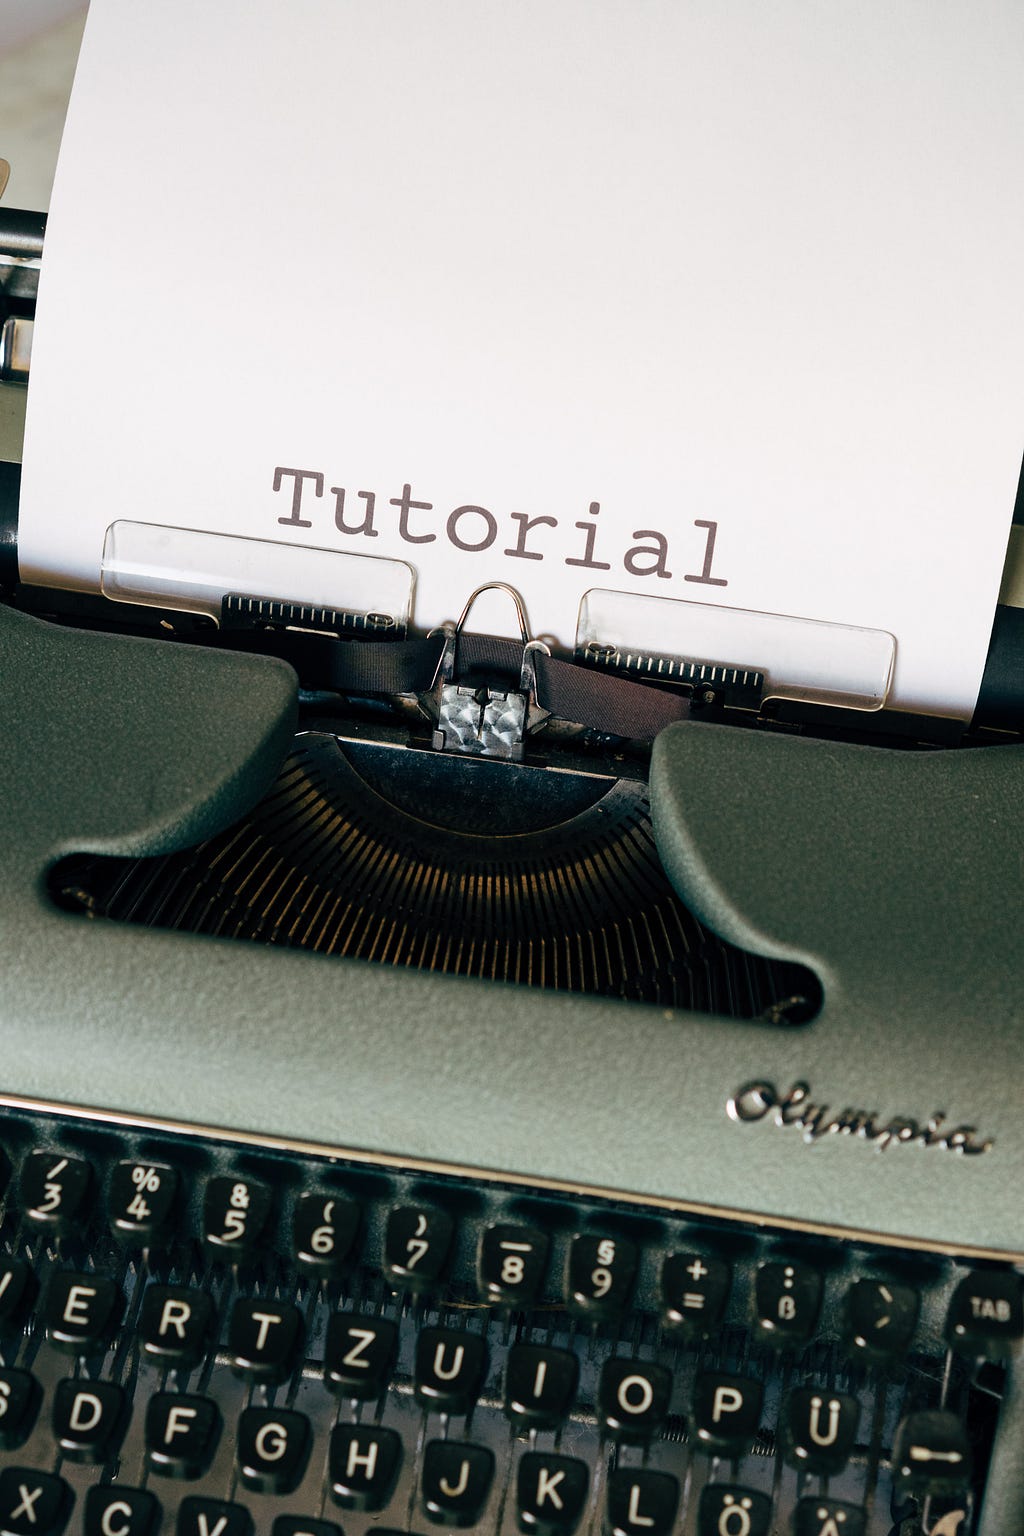 Máquina de escrever com um papel digitado com a palavra Tutorial.